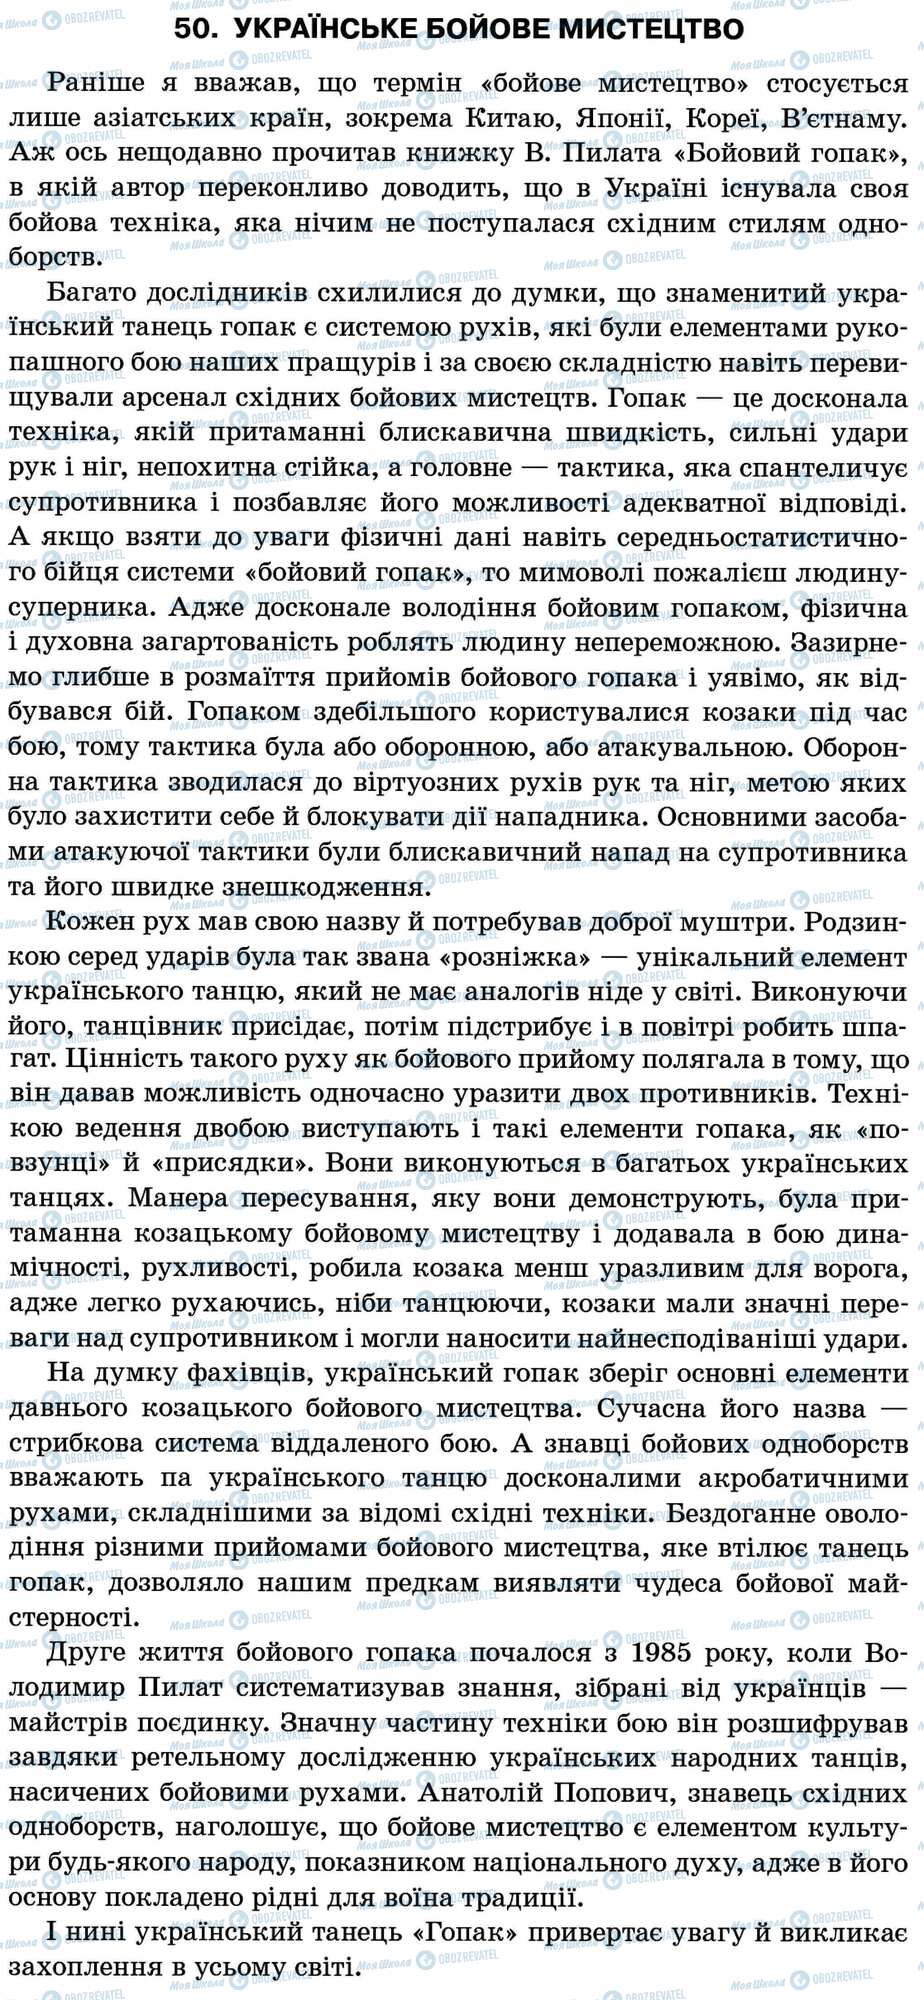 ДПА Укр мова 11 класс страница 50. Українське бойове мистецтво